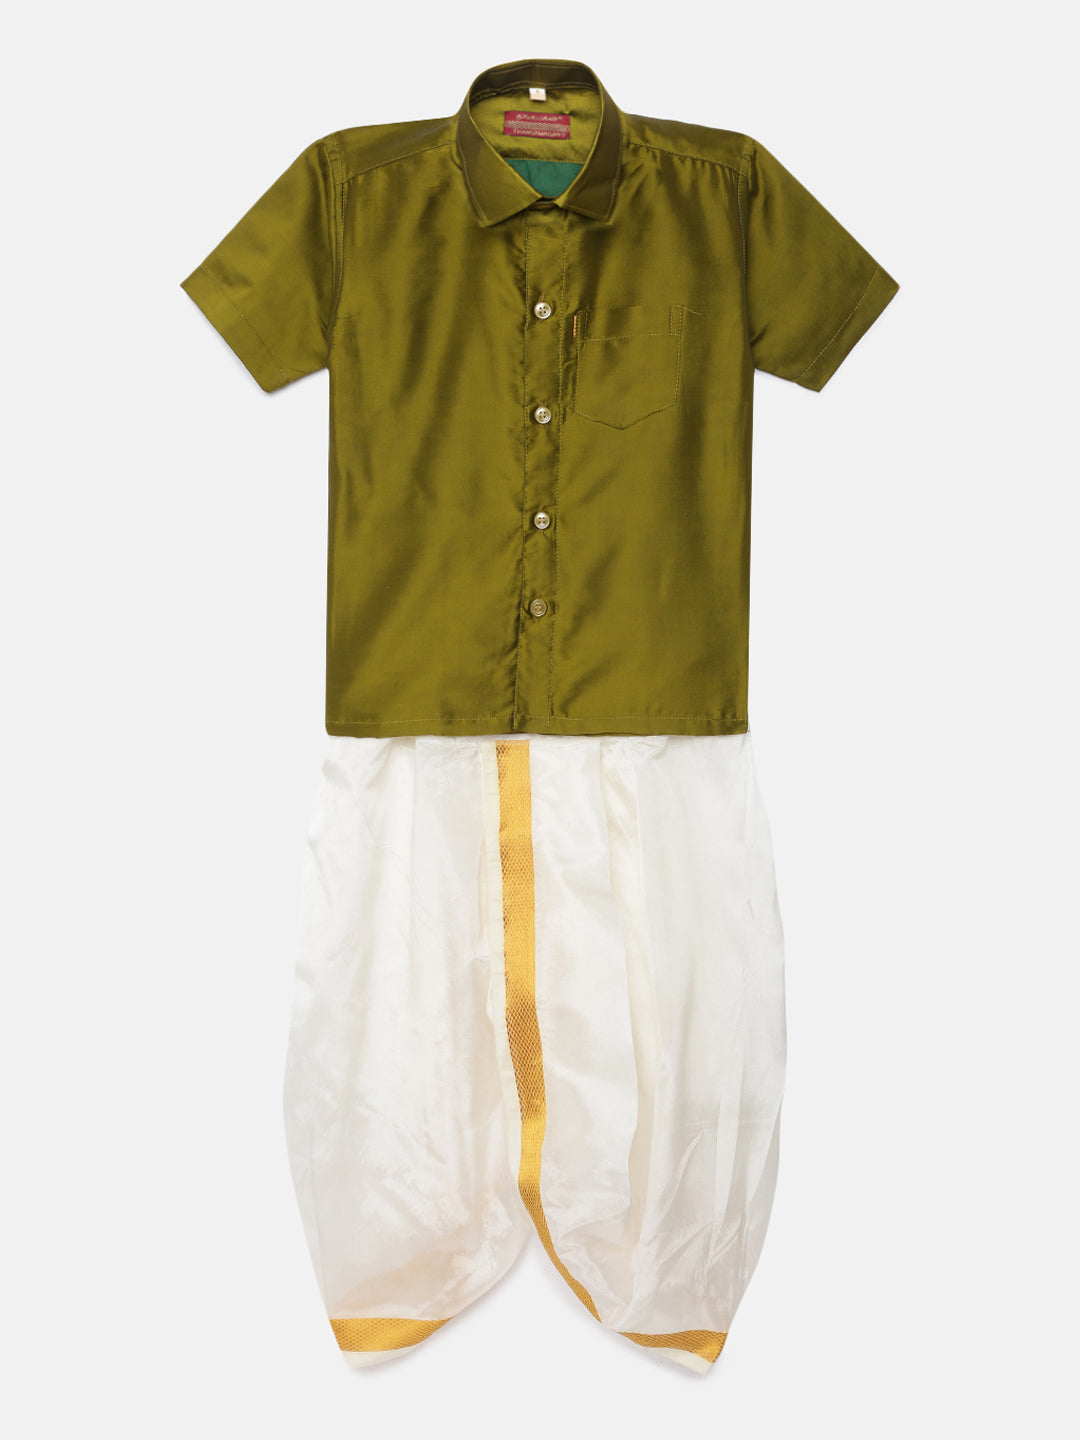 11. Boys Panjagajam & Shirt Set